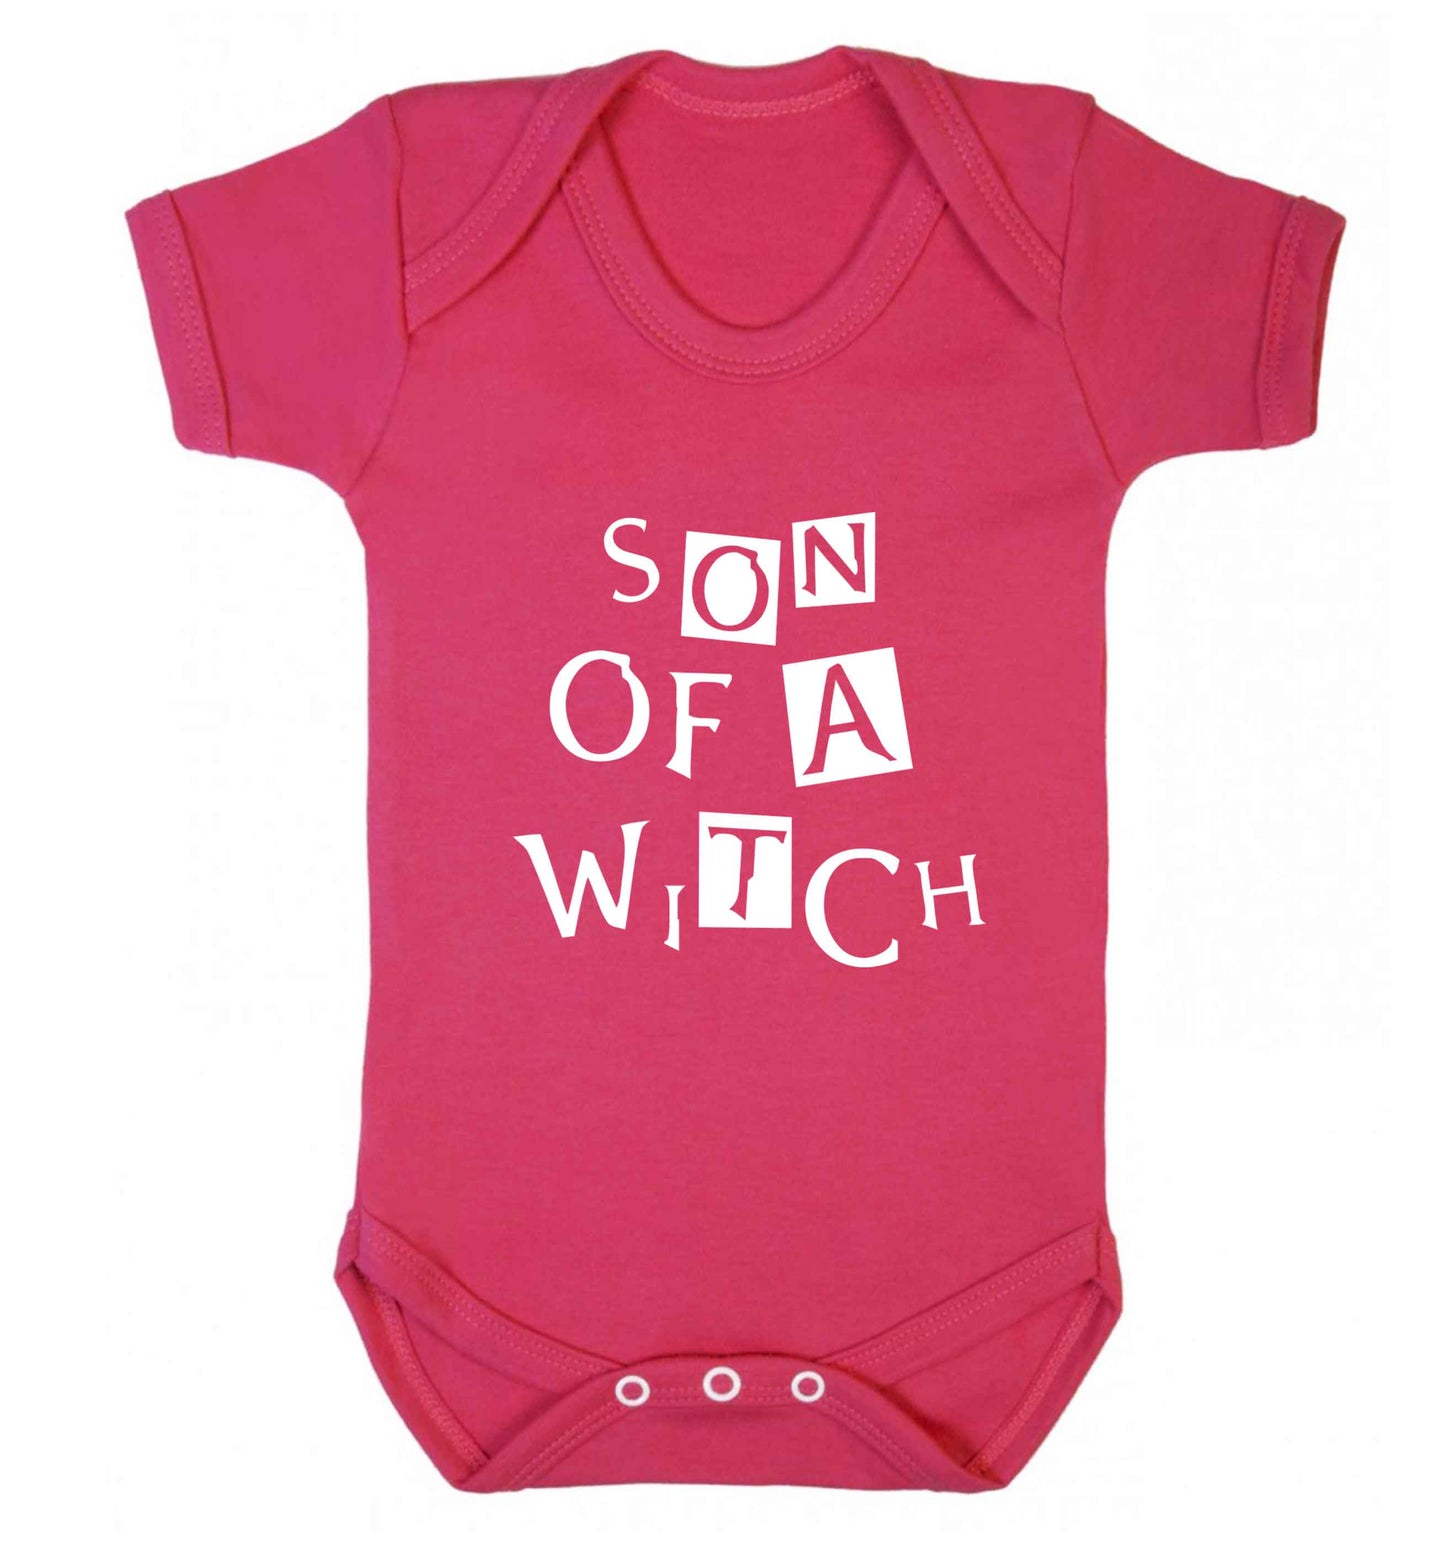 Son of a witch baby vest dark pink 18-24 months